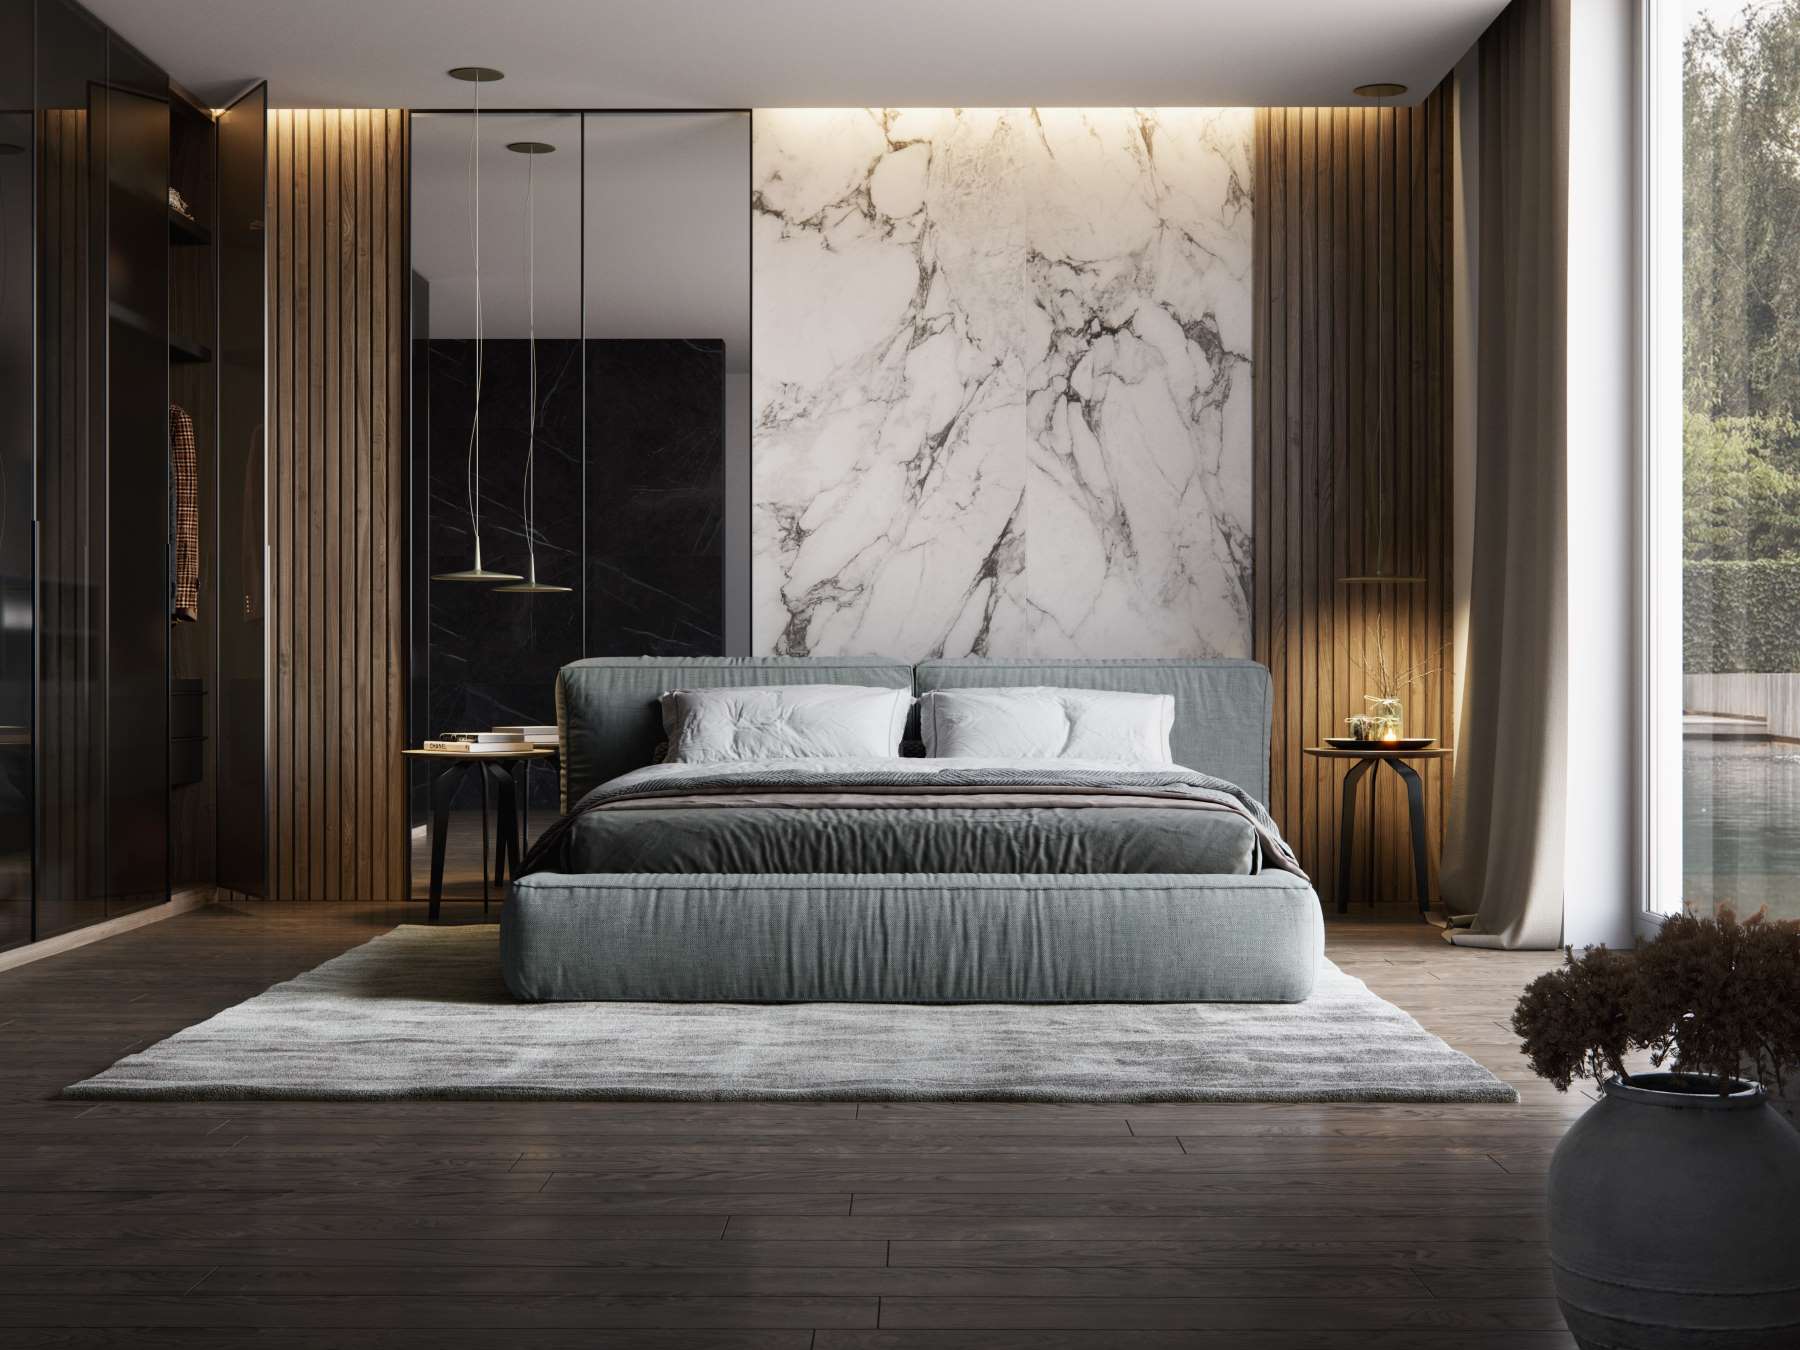 Aranżacja sypialni z drewnem i marmurem w formie płytki wielkoformatowej